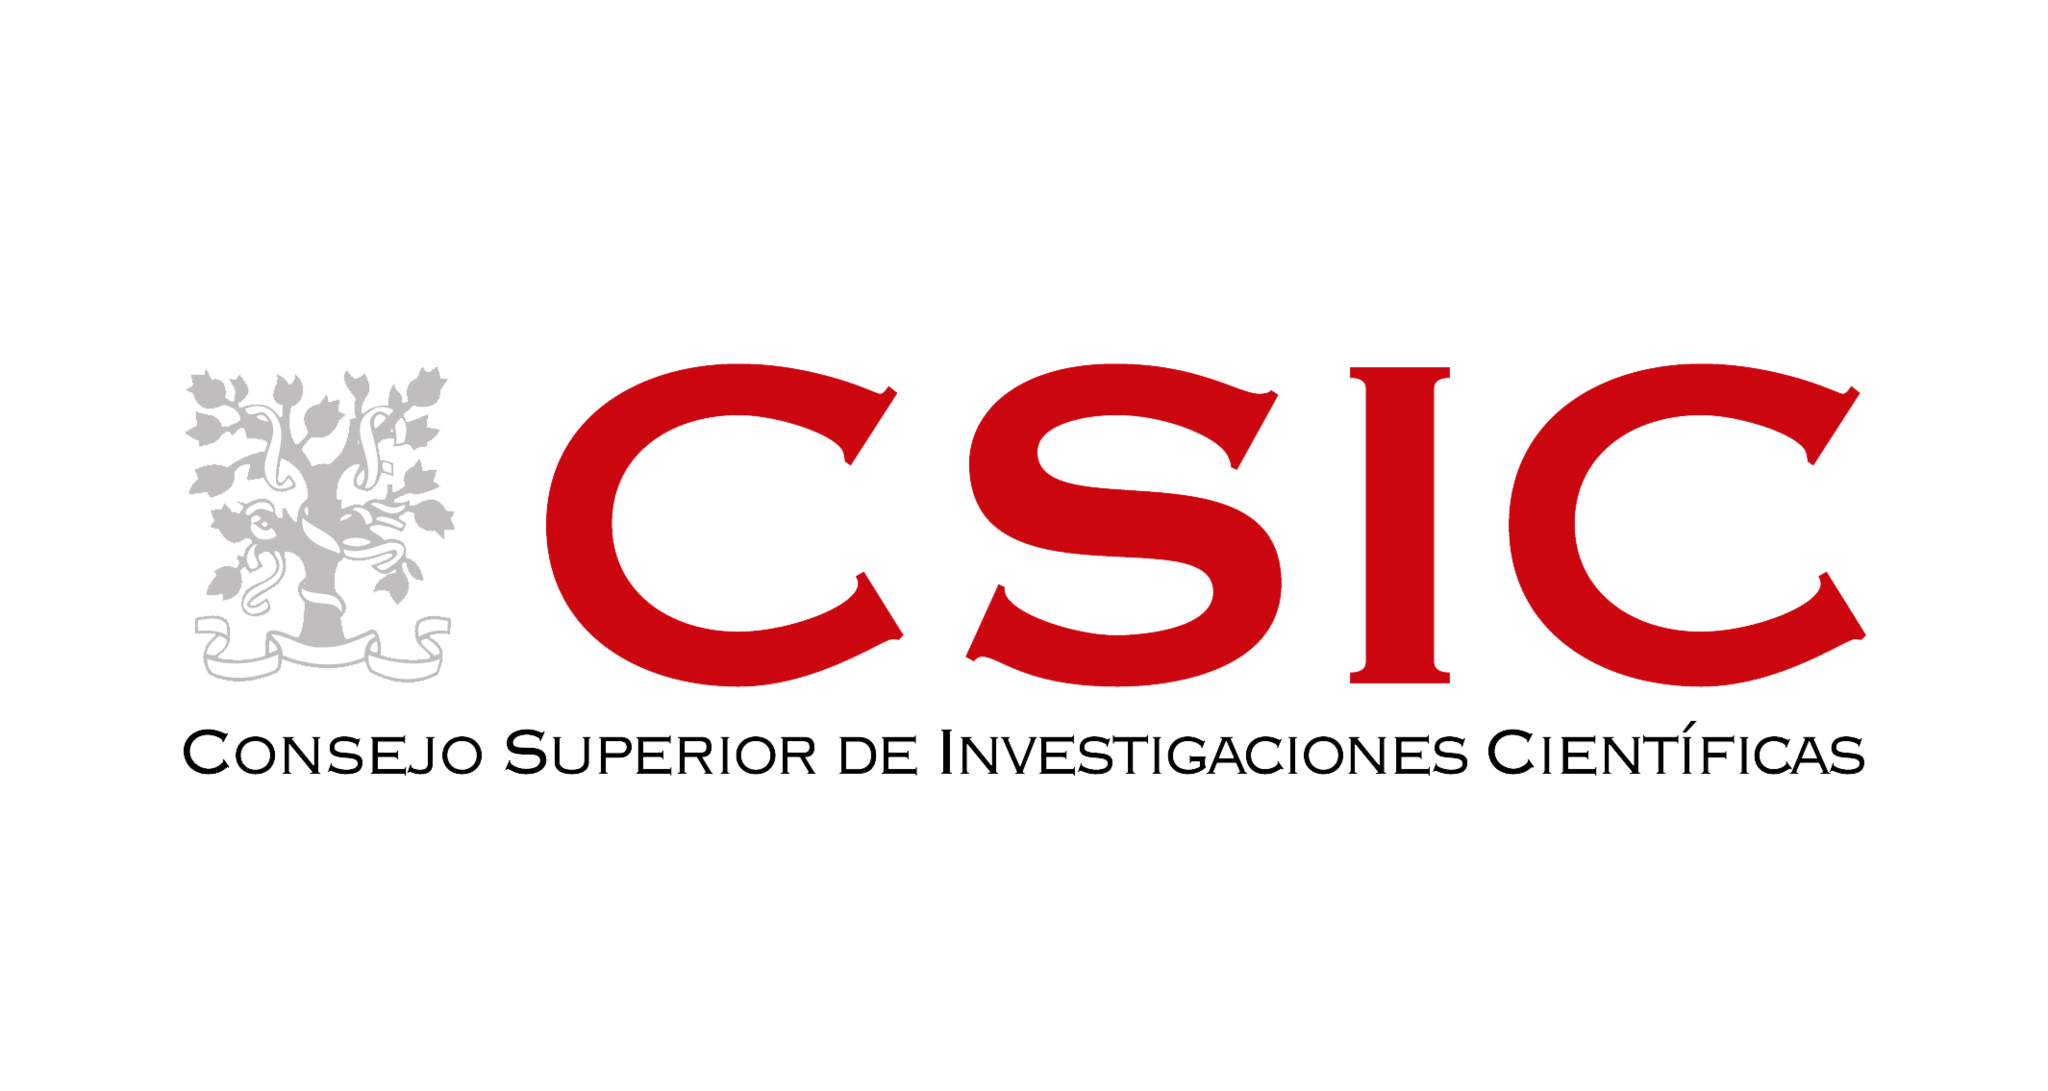 10.	The Agencia Estatal Consejo Superior de Investigaciones Científicas (CSIC)